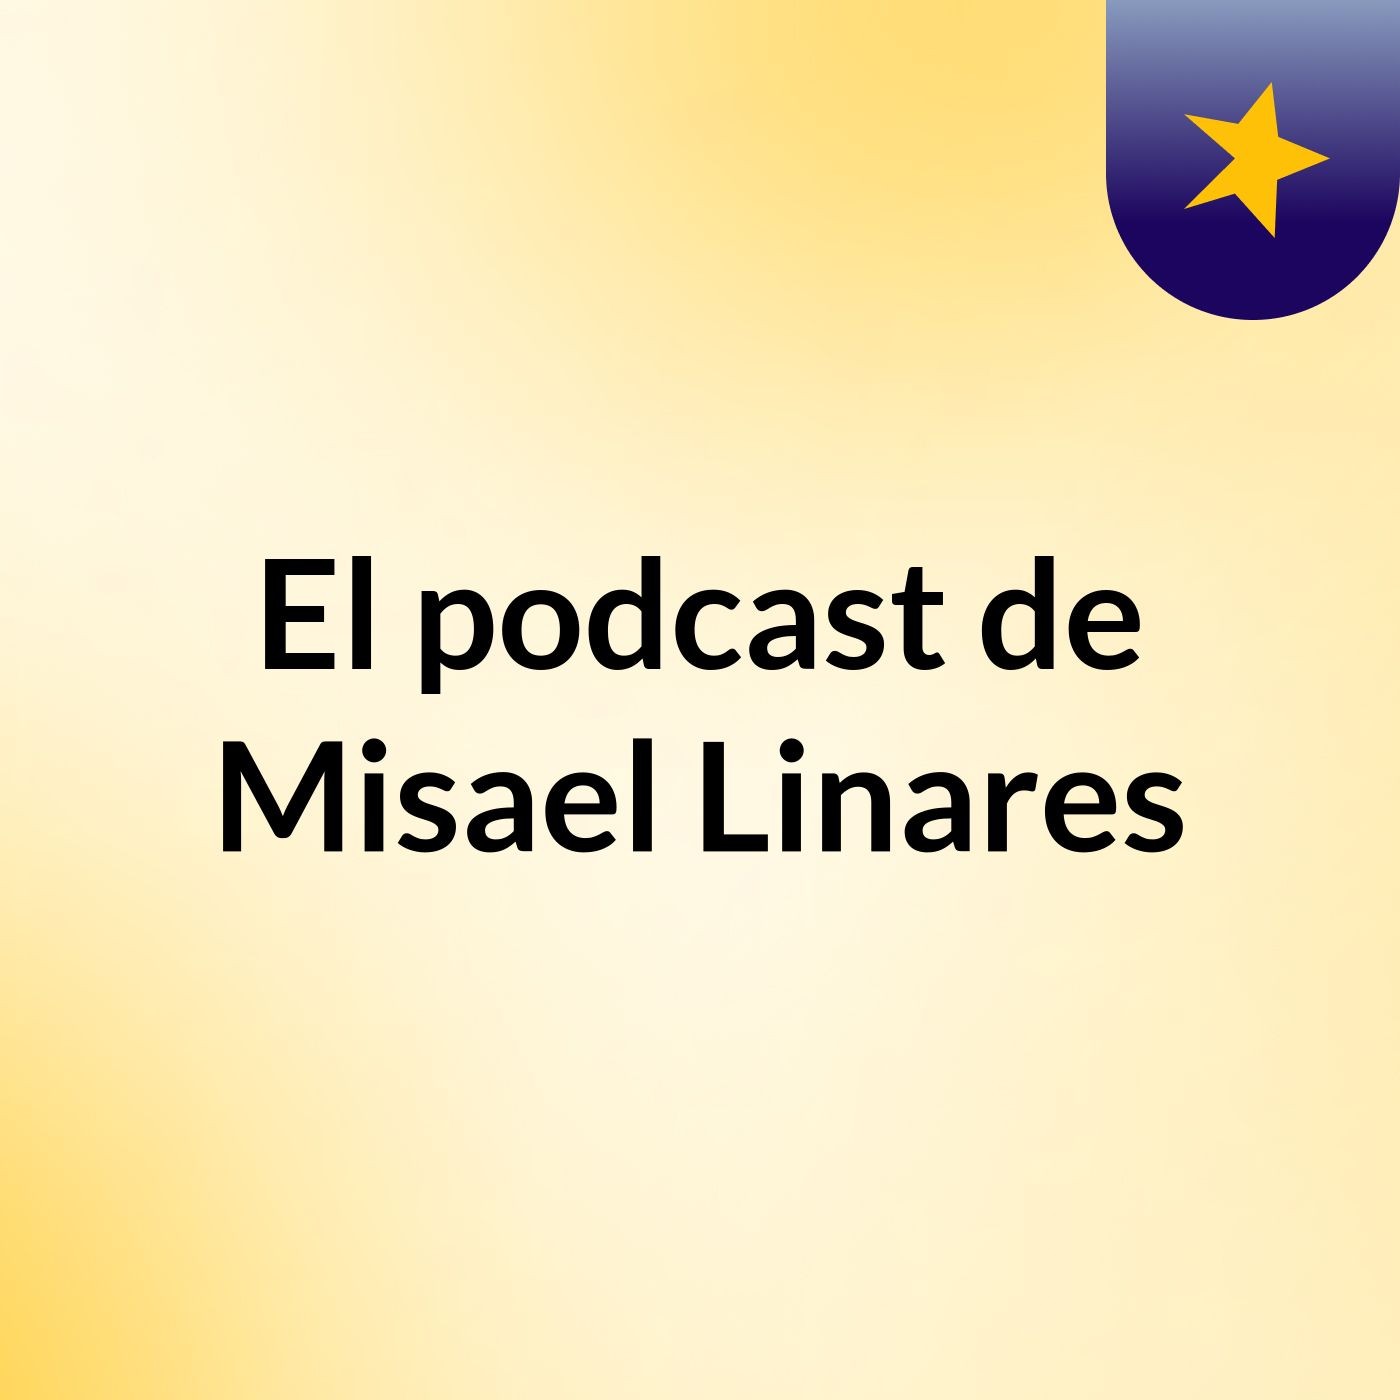 El podcast de Misael Linares